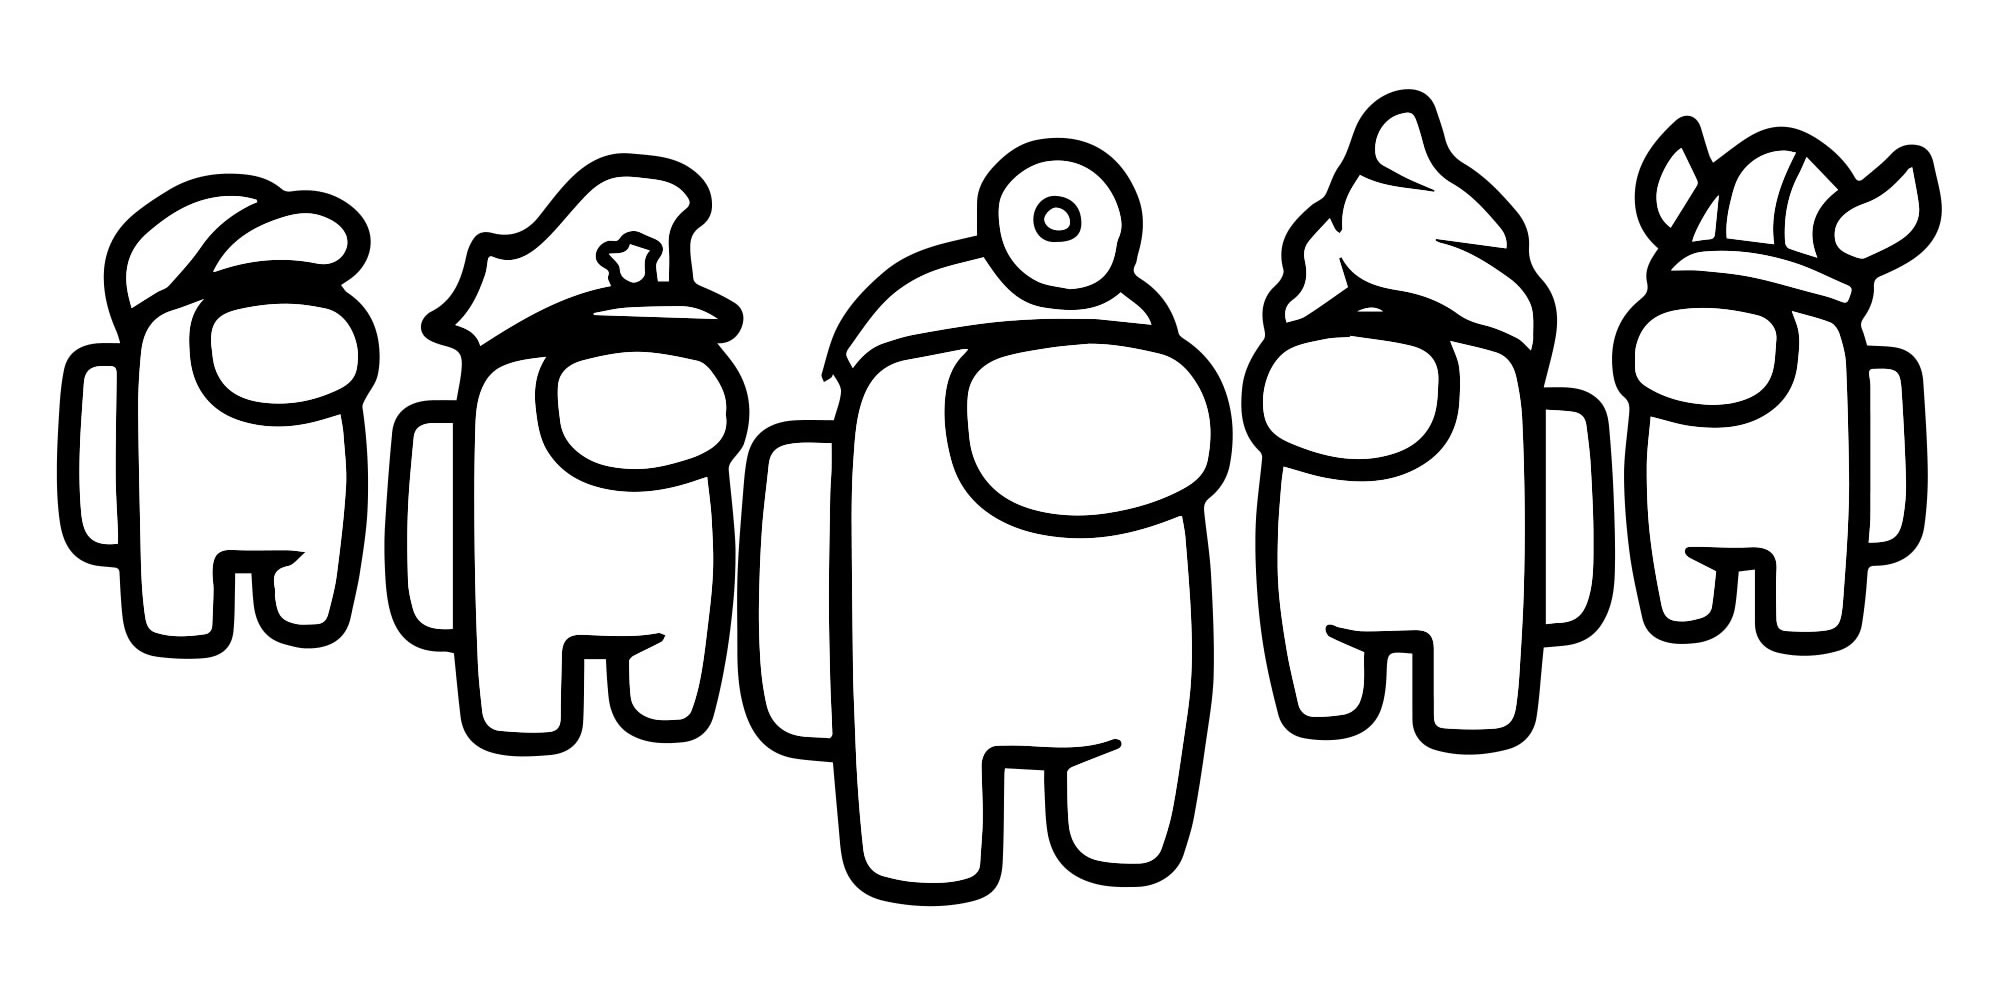 Персонажи Амонг раскраска для детей